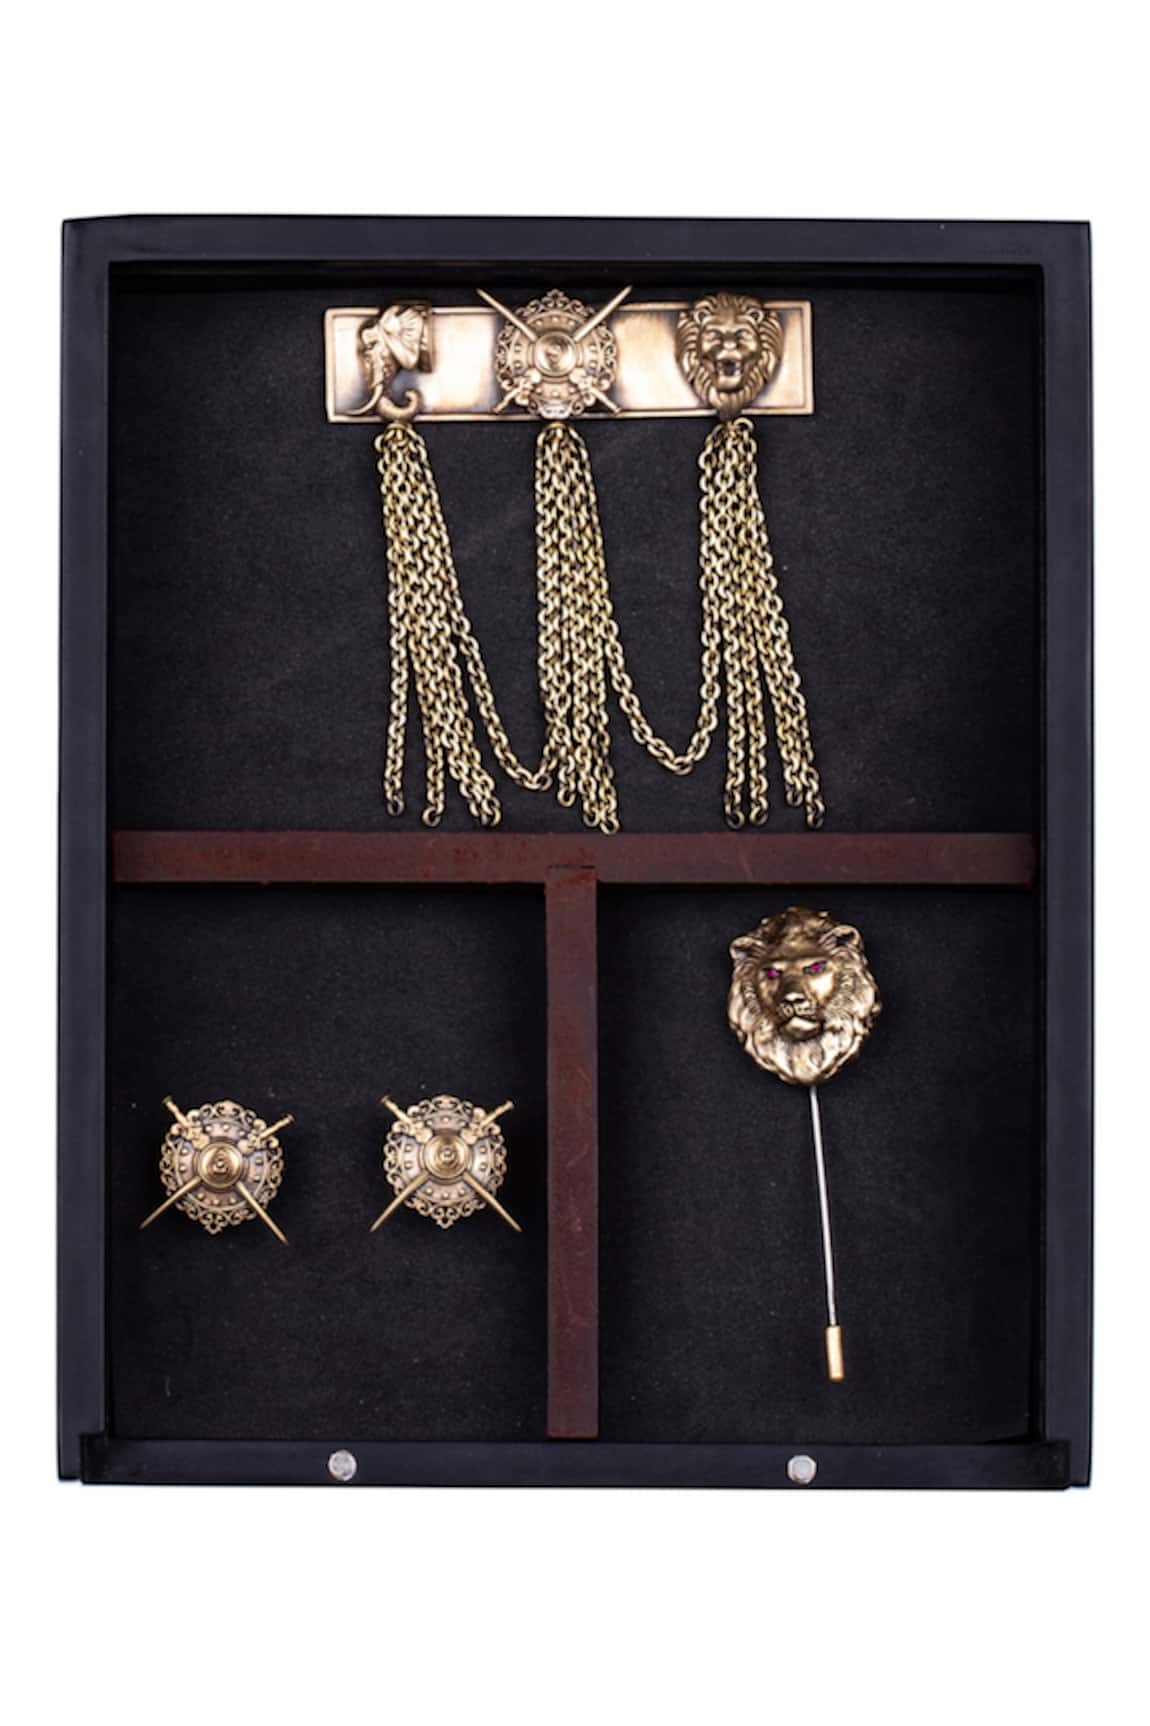 Cosa Nostraa Maharaja Cufflink Brooch & Lapel Pin Set